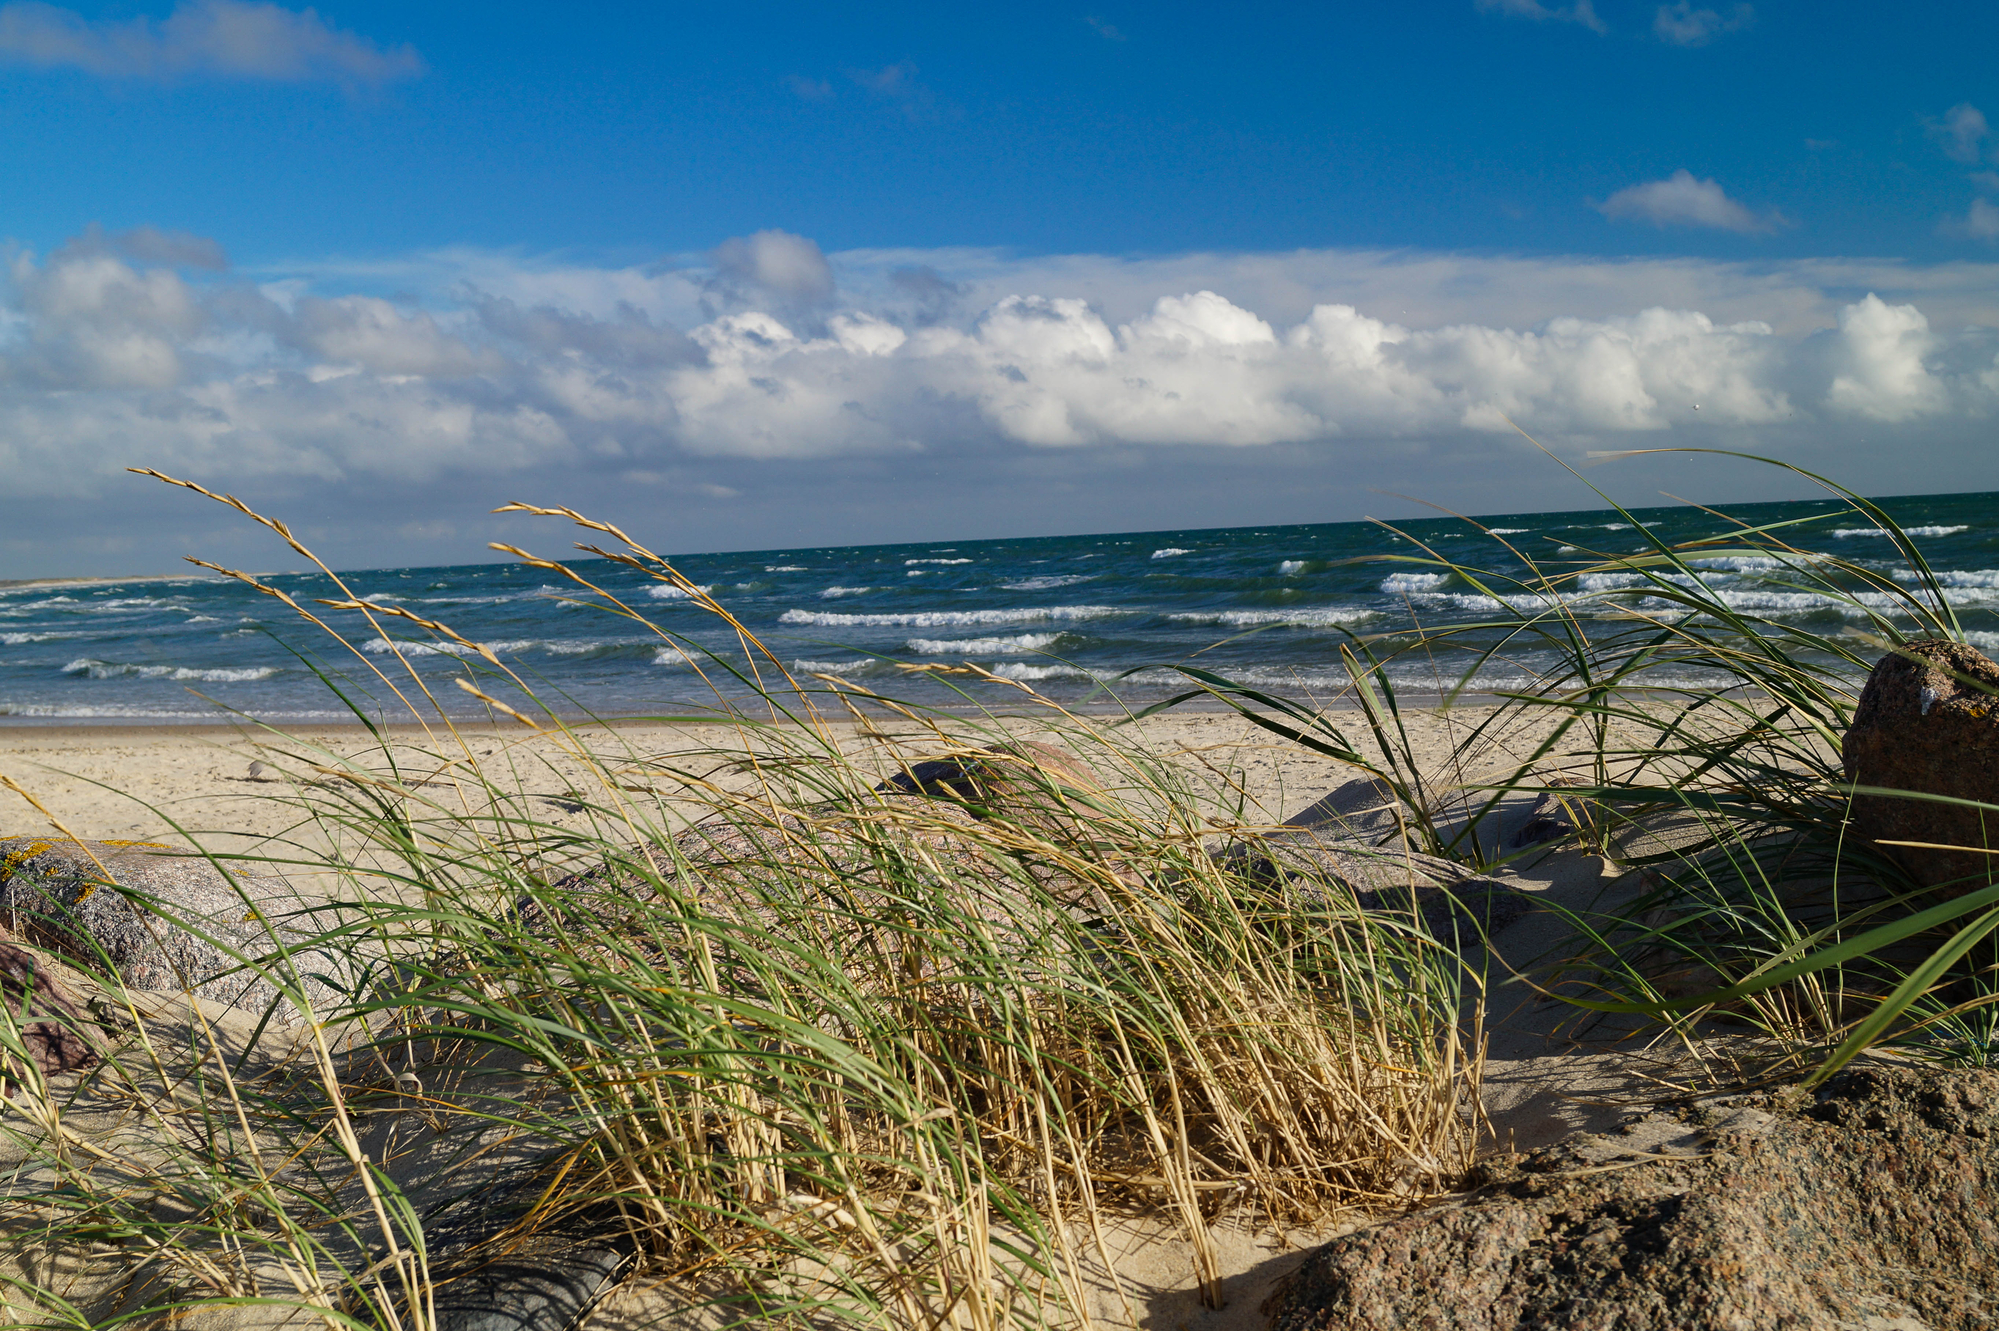 Impressionen vom endlosen Strand am Nordmeer in Blavand Dänemark